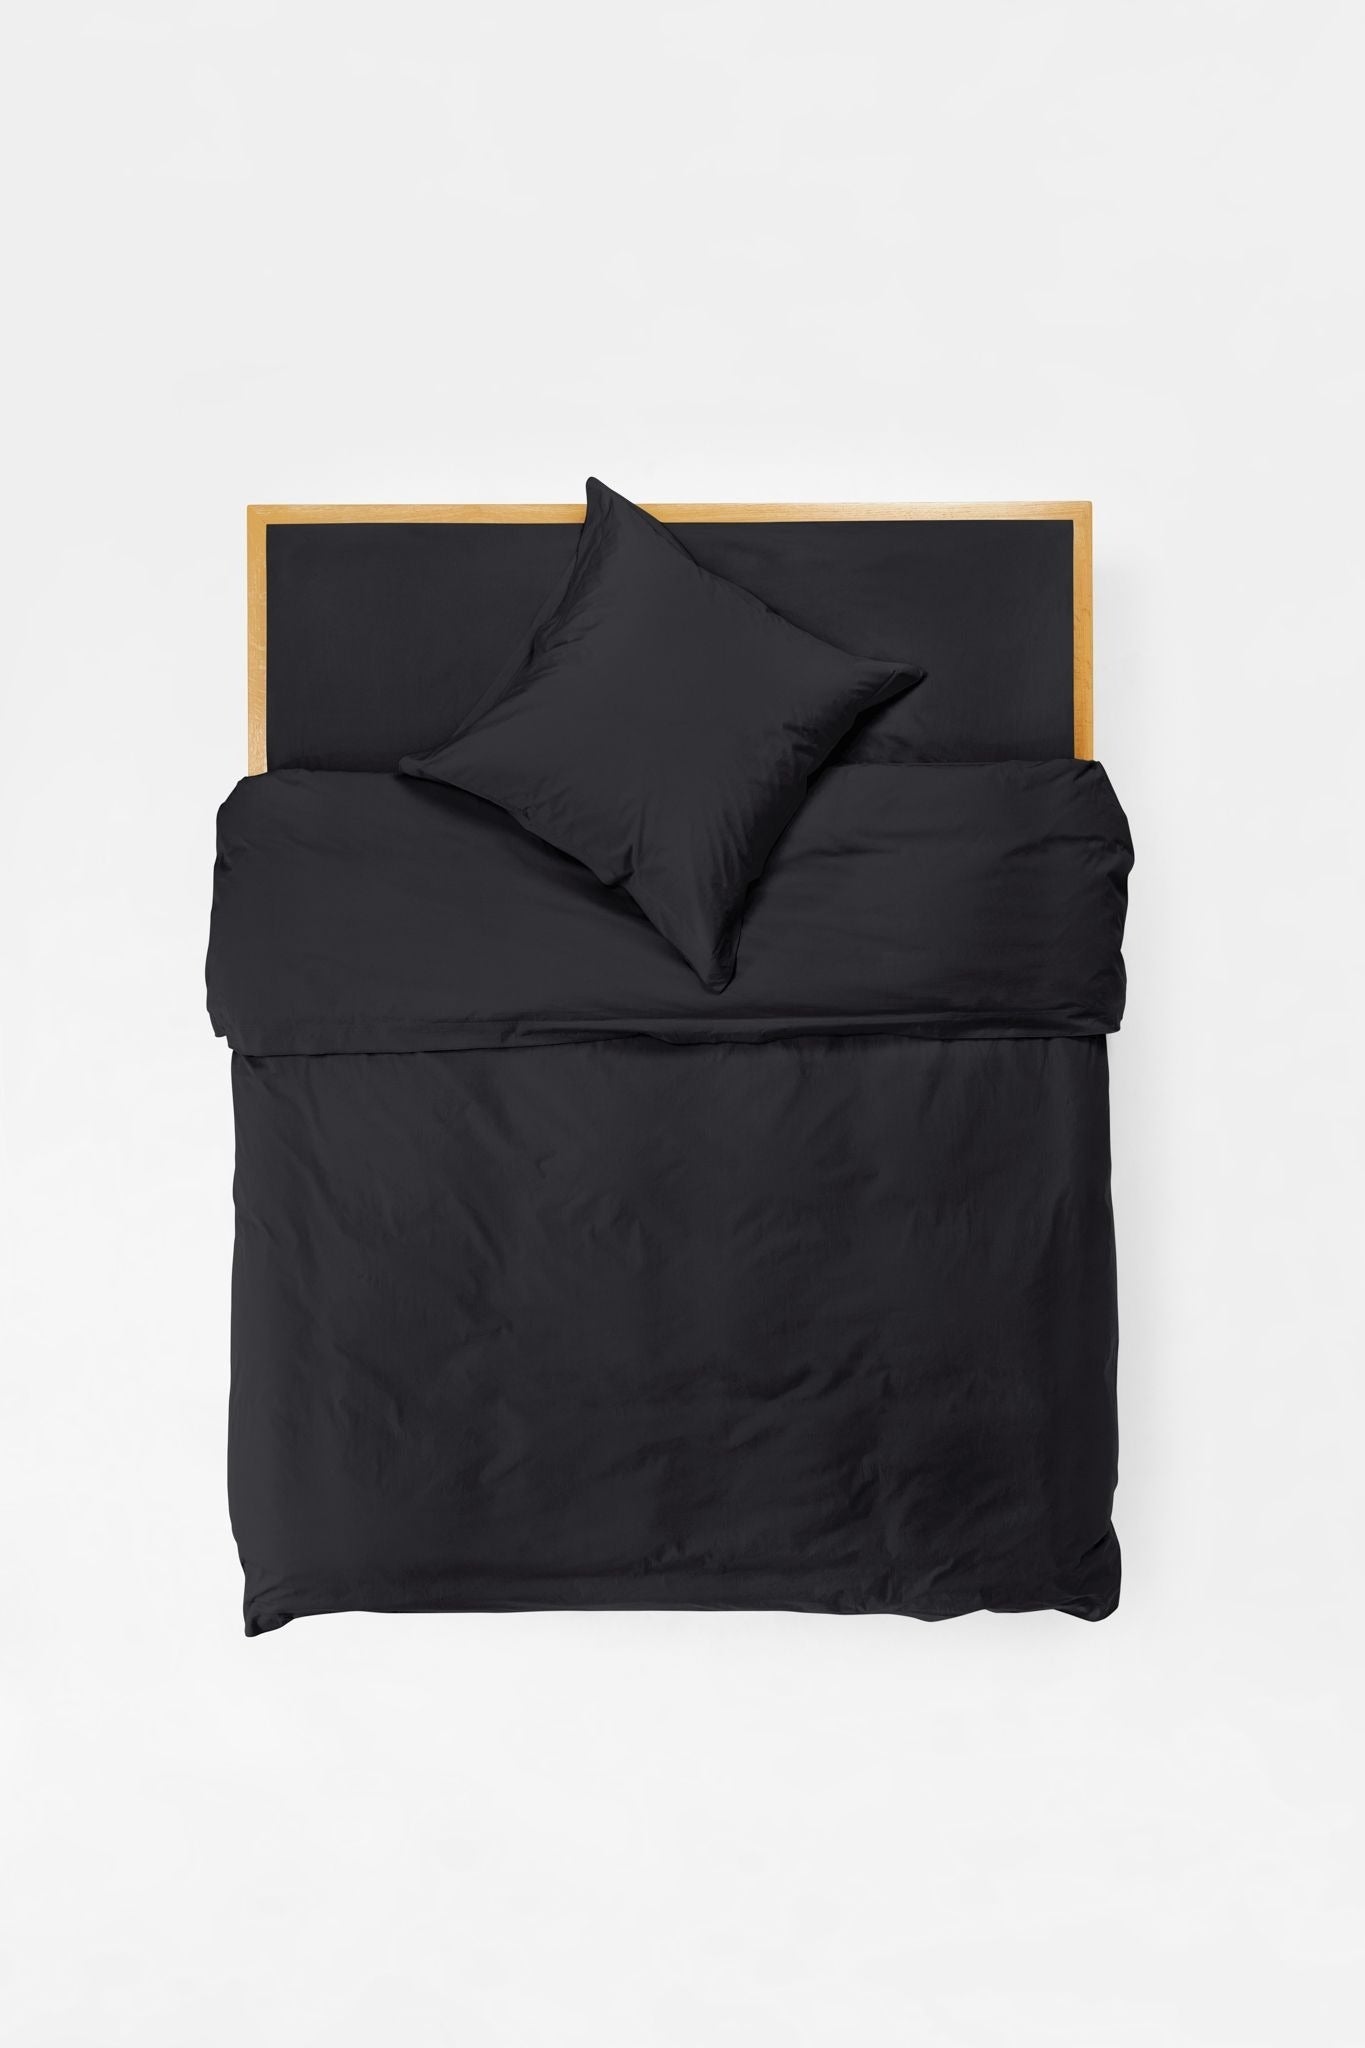 Mono Organic Cotton Percale Pillow Pair - Cinder Pillows in Euro Pillow